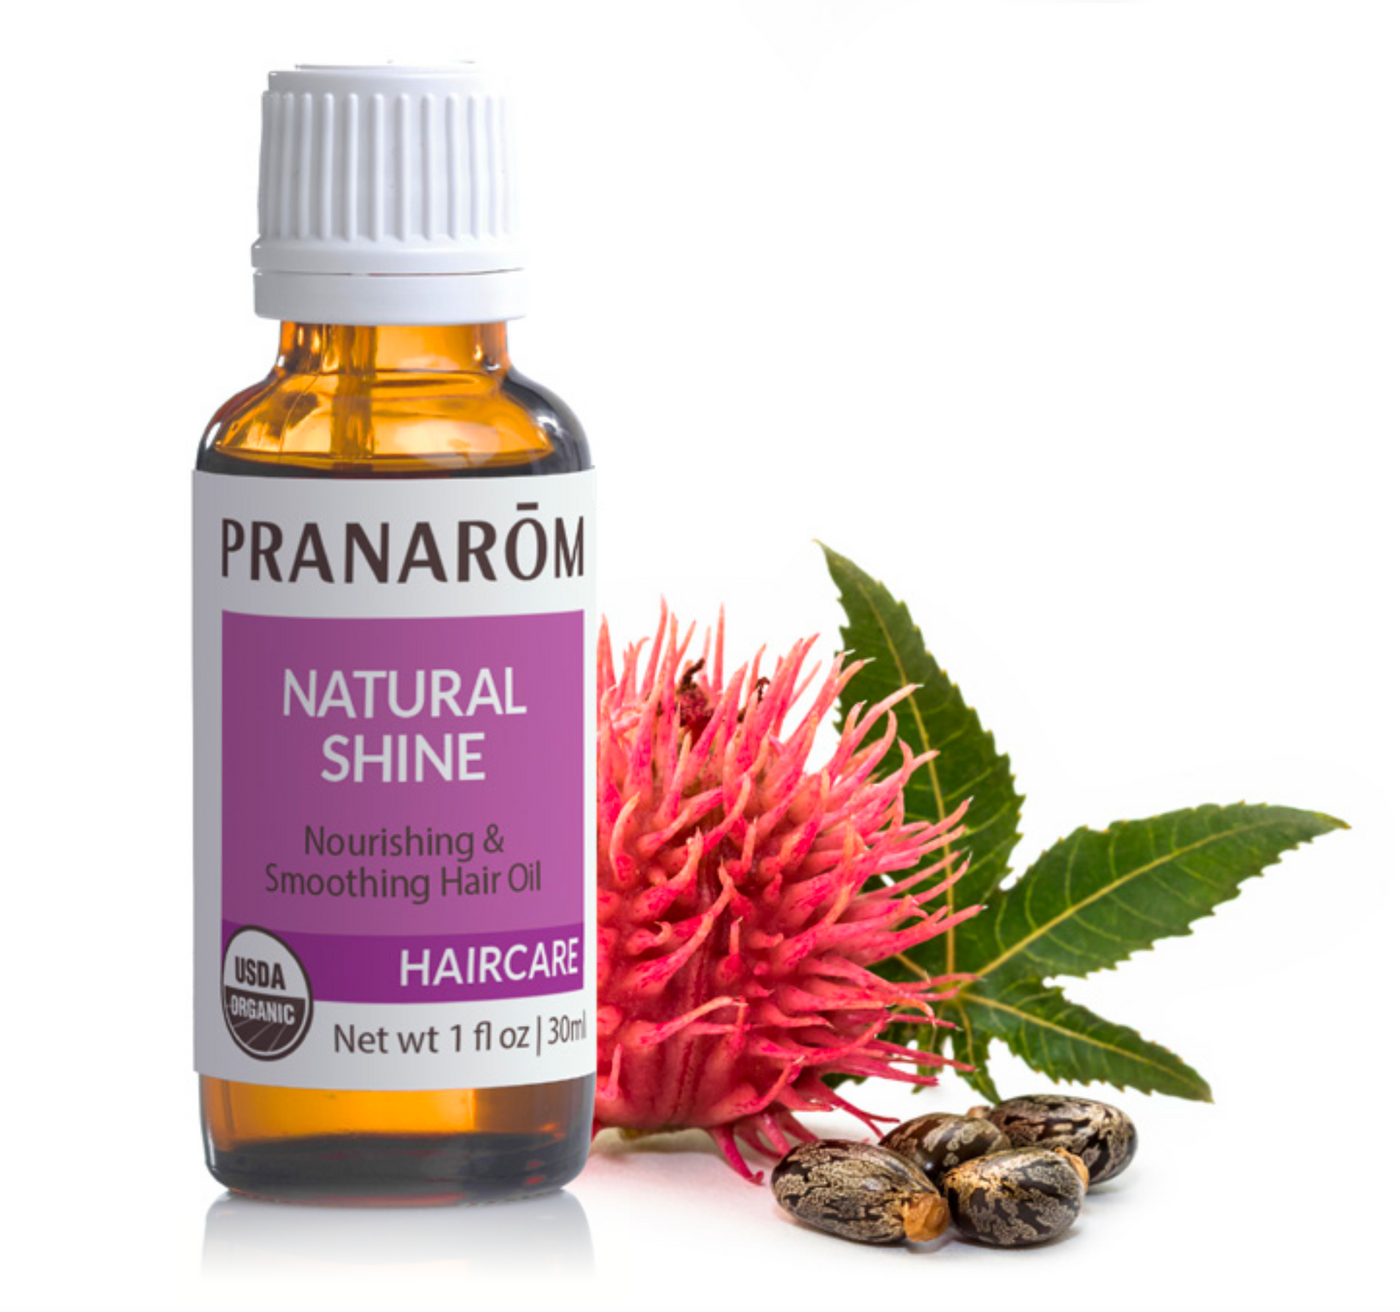 Pranarom: Natural Shine Hair Oil